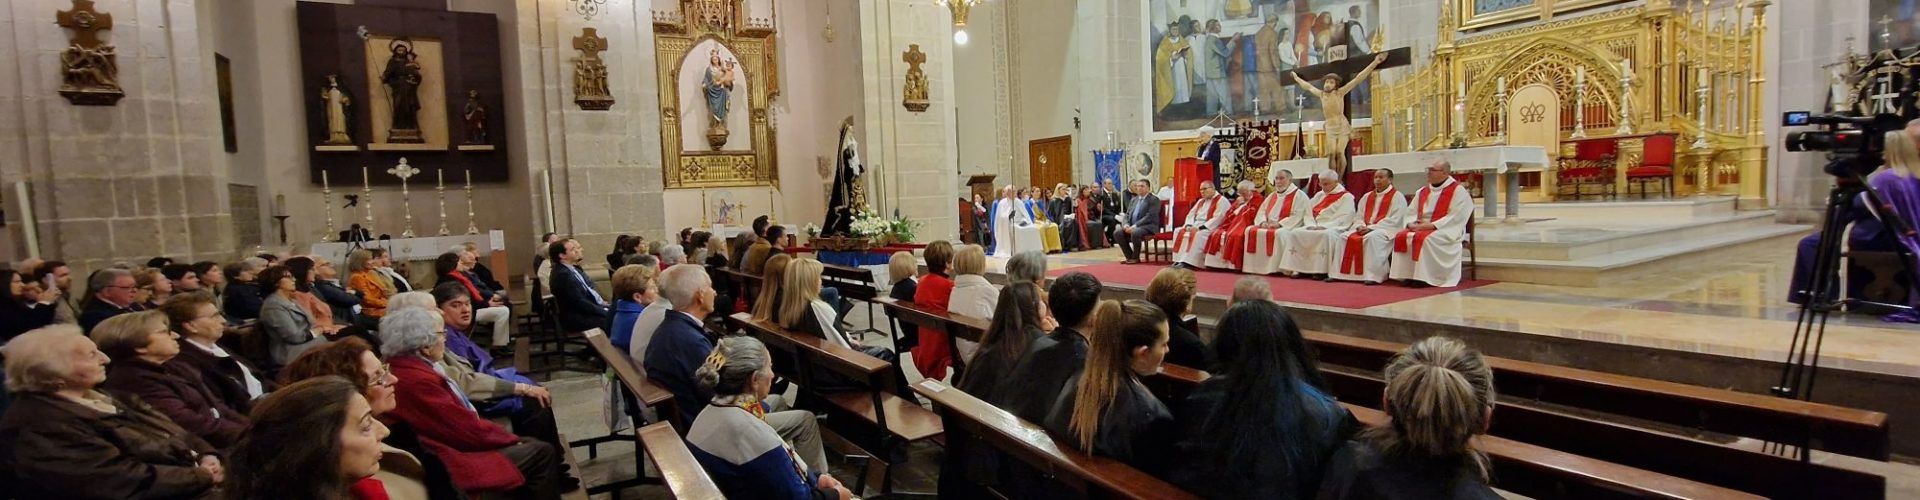 Vídeo i fotos de la processó dels Dolors i el pregó de Setmana Santa a Vinaròs